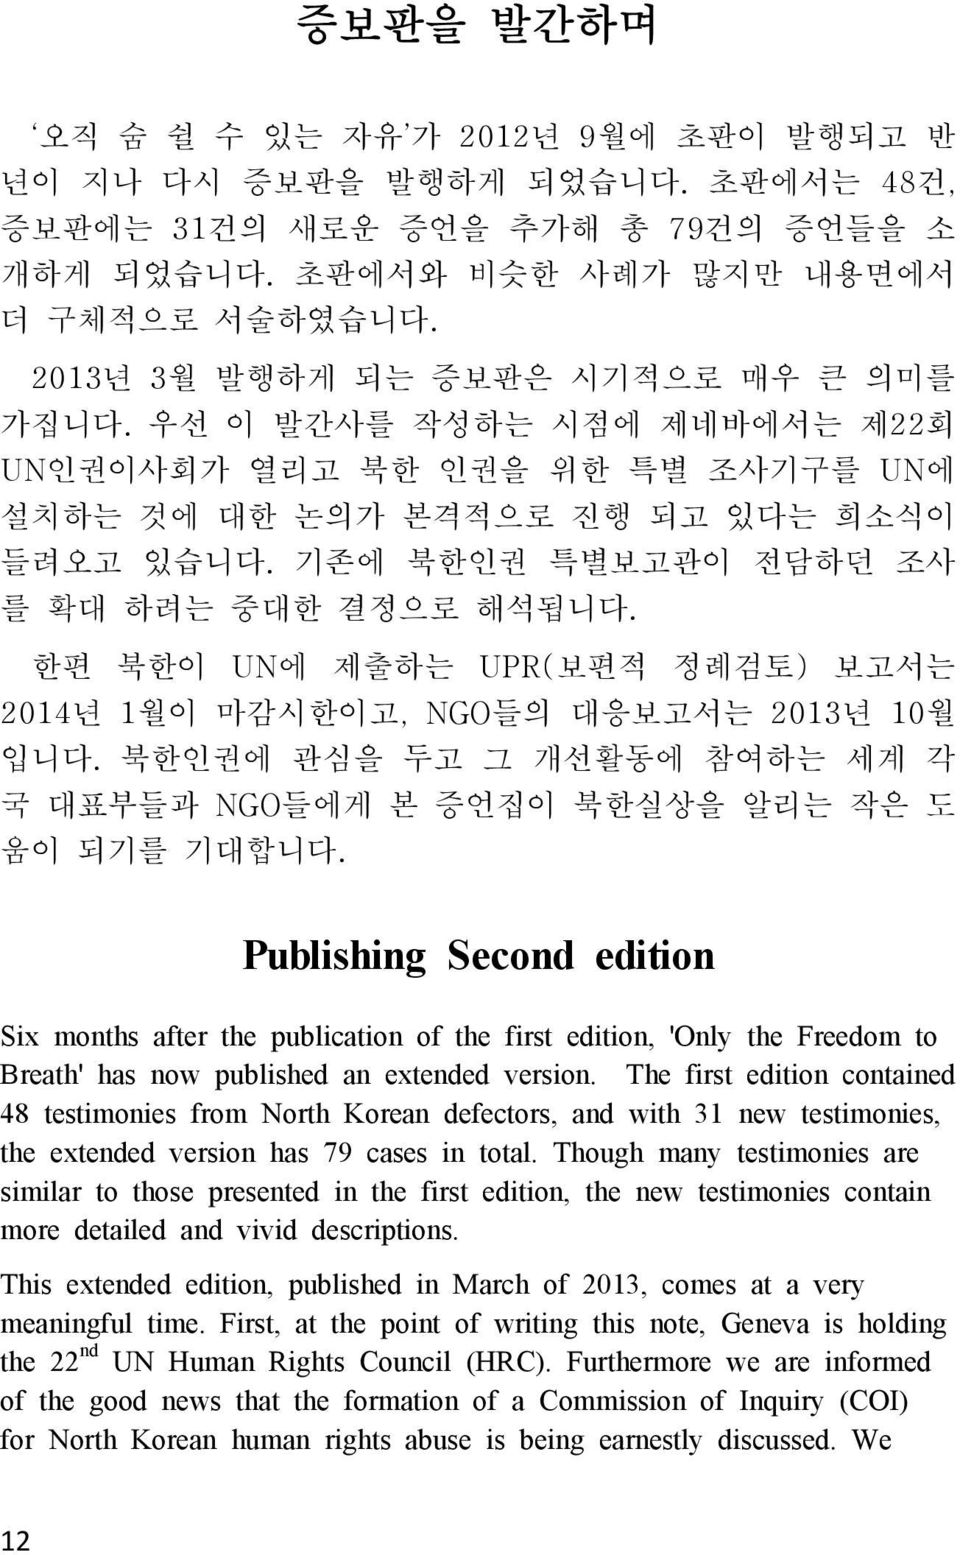 기존에 북한인권 특별보고관이 전담하던 조사 를 확대 하려는 중대한 결정으로 해석됩니다. 한편 북한이 UN에 제출하는 UPR( 보편적 정례검토) 보고서는 2014년 1 월이 마감시한이고, NGO들의 대응보고서는 2013년 10월 입니다. 북한인권에 관심을 두고 그 개선활동에 참여하는 세계 각 국 대표부들과 움이 되기를 기대합니다.